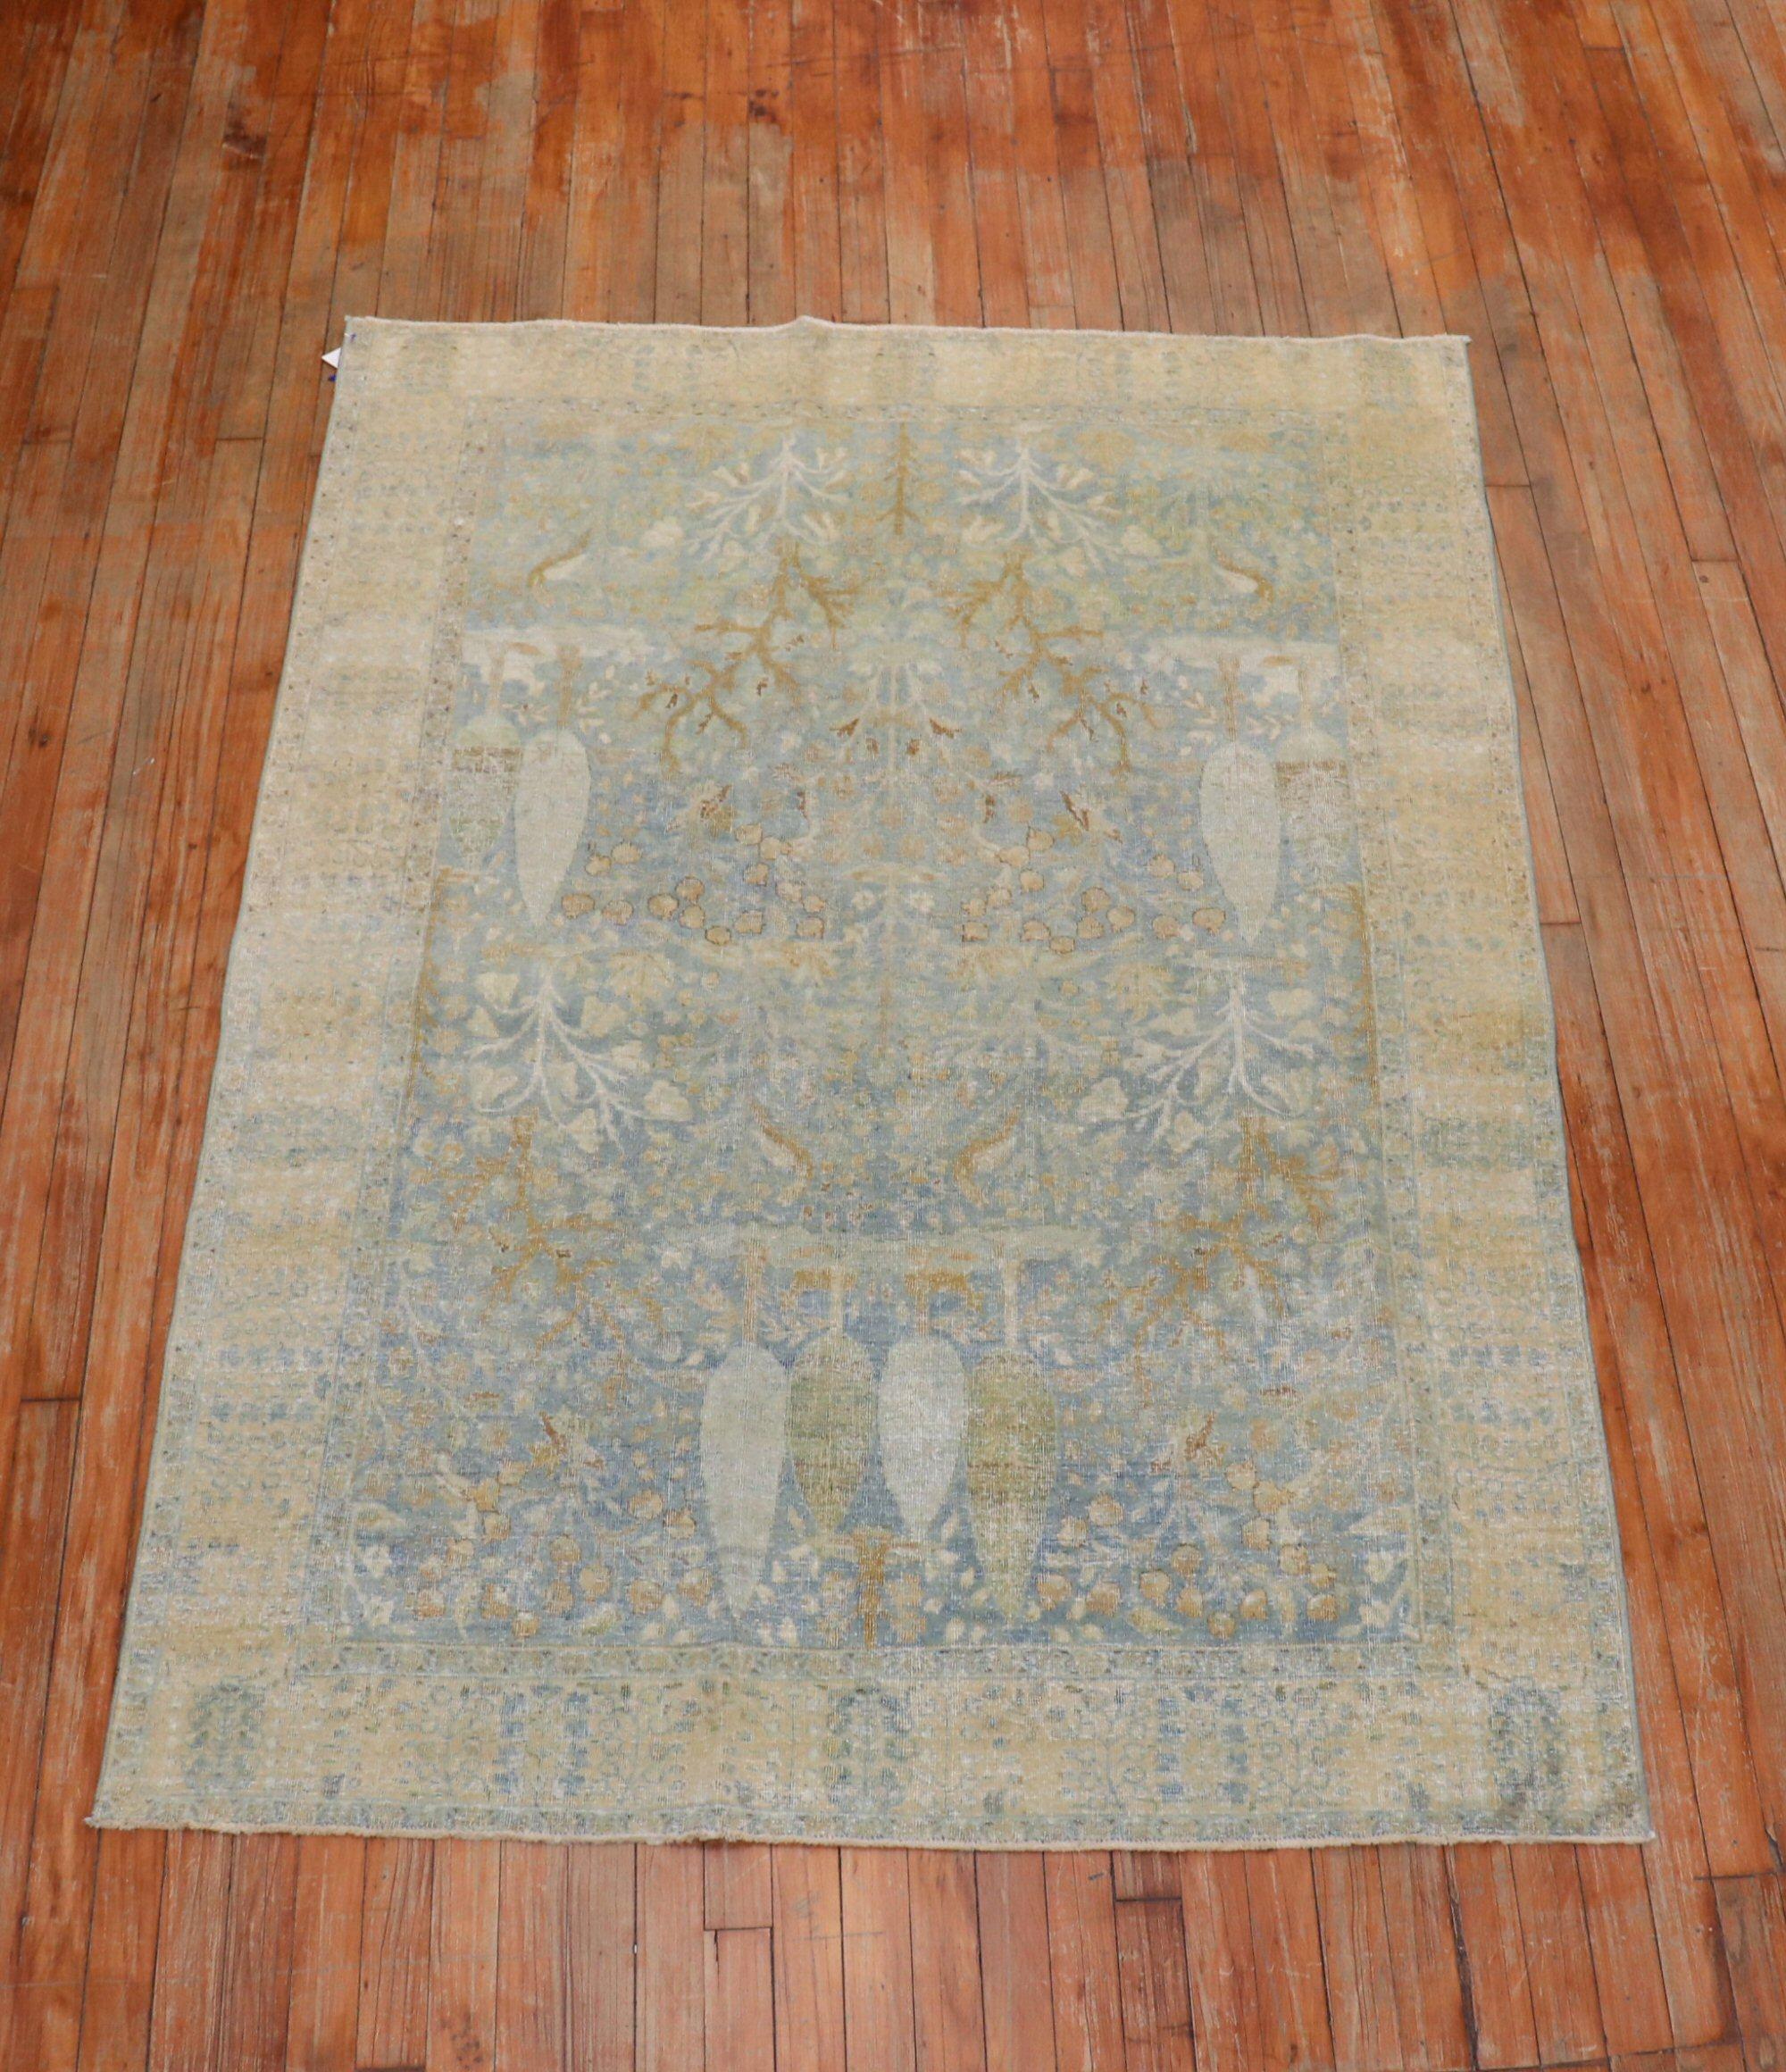 persischer Täbris-Bilderteppich aus dem 19. Jahrhundert in vorherrschendem Hellblau. Leicht genug, um auch als Wandbehang verwendet zu werden

Maße: 4'6